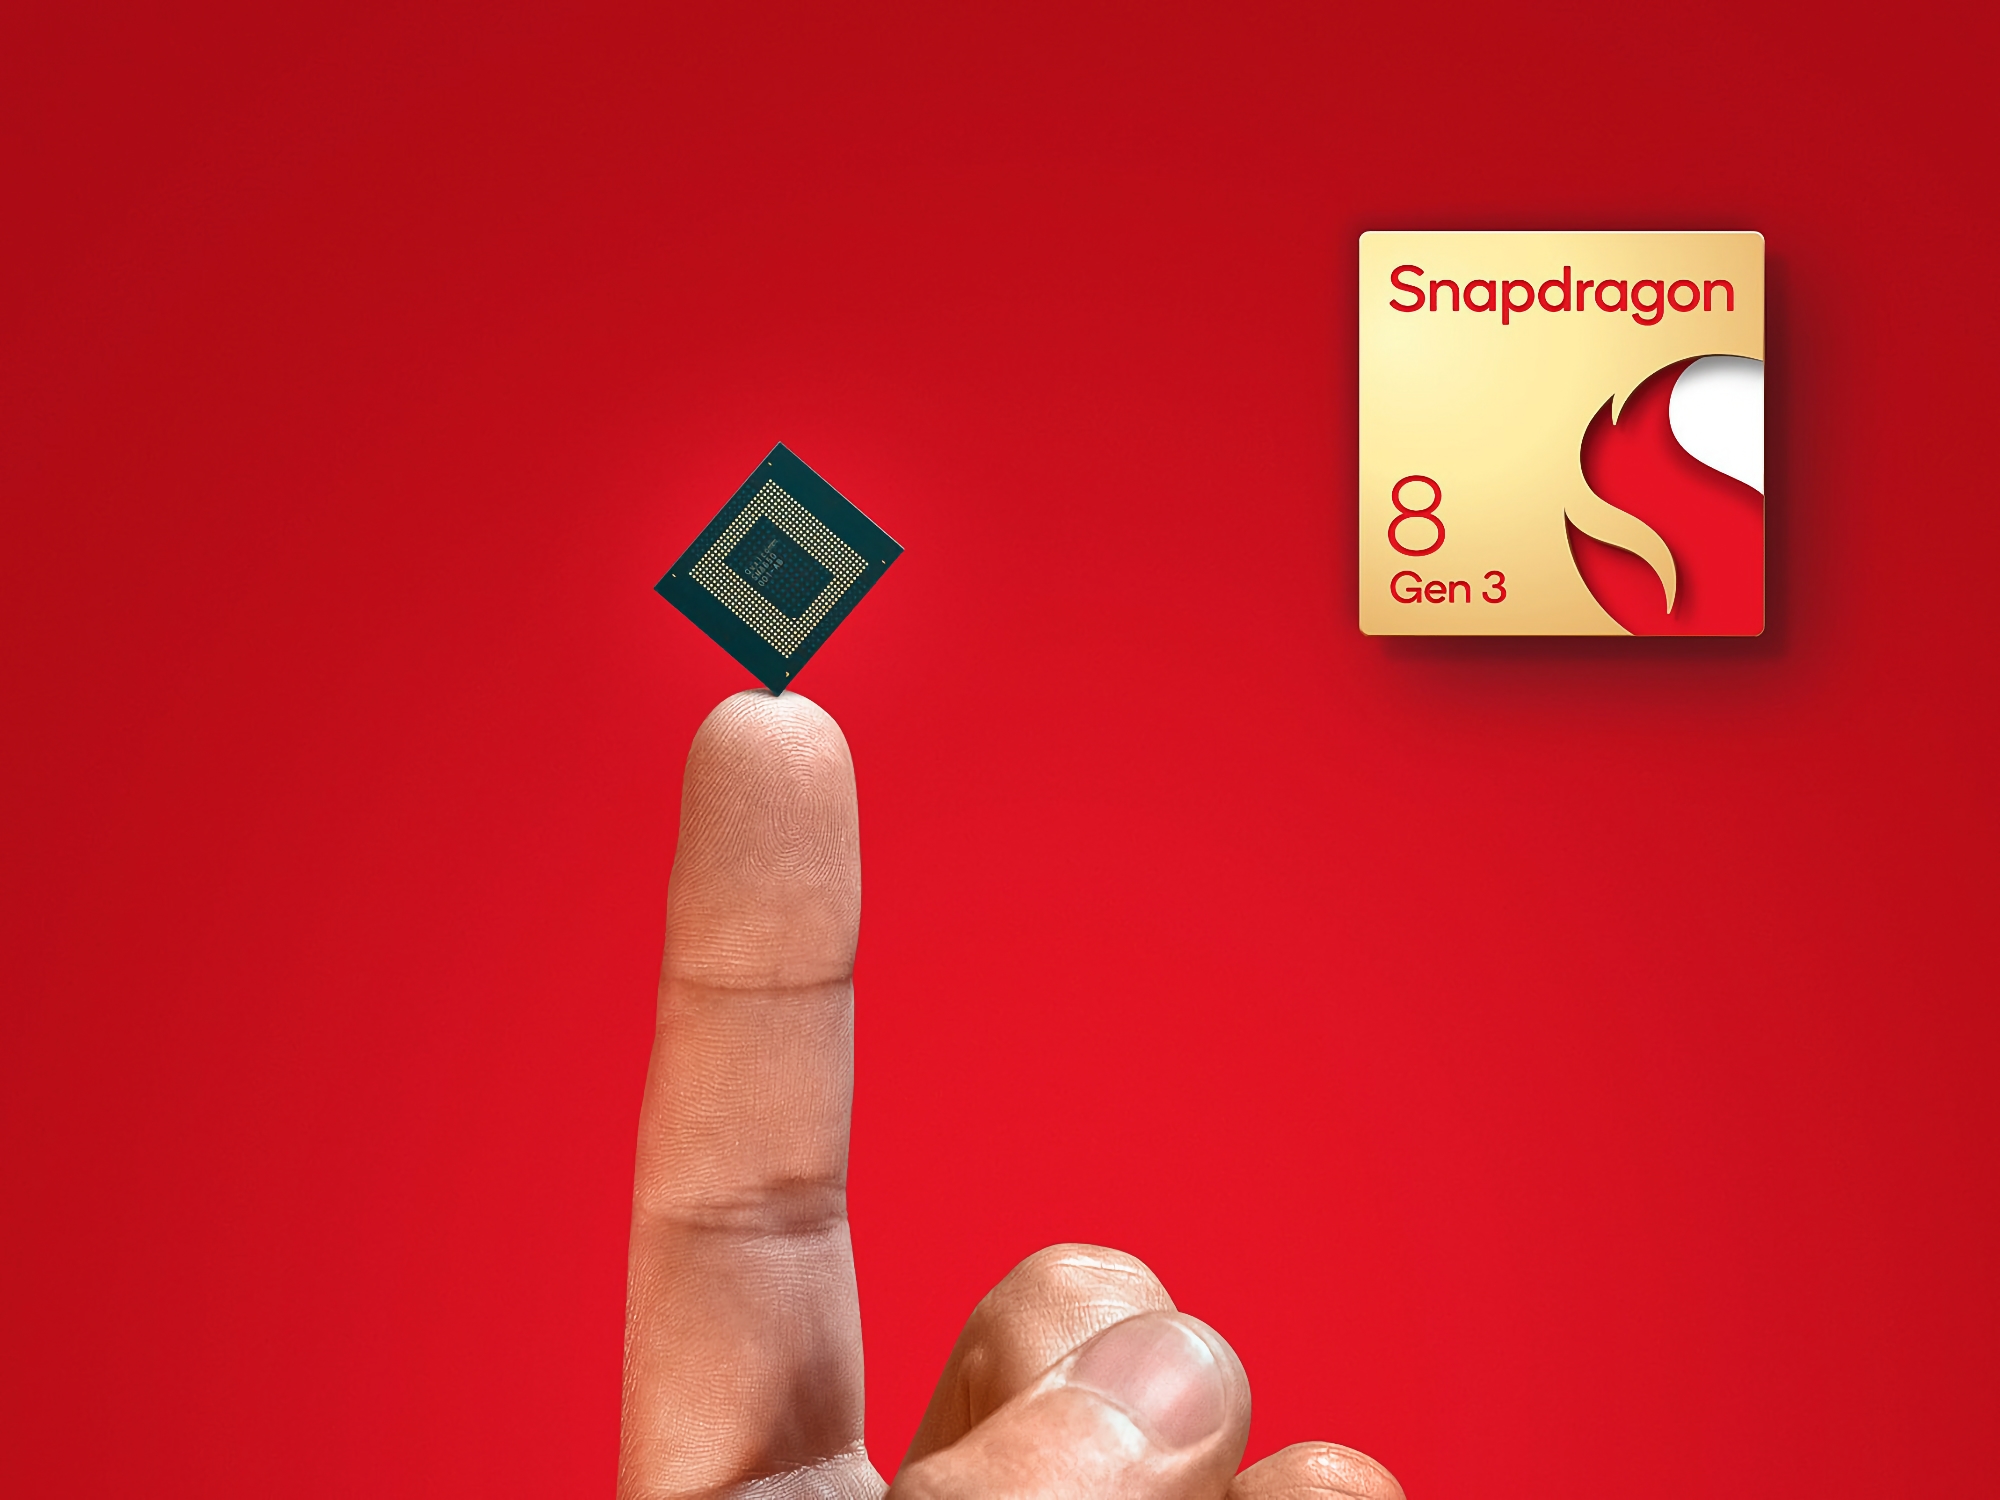 Welche Smartphones werden die ersten sein, die den Snapdragon 8 Gen 3 Prozessor erhalten